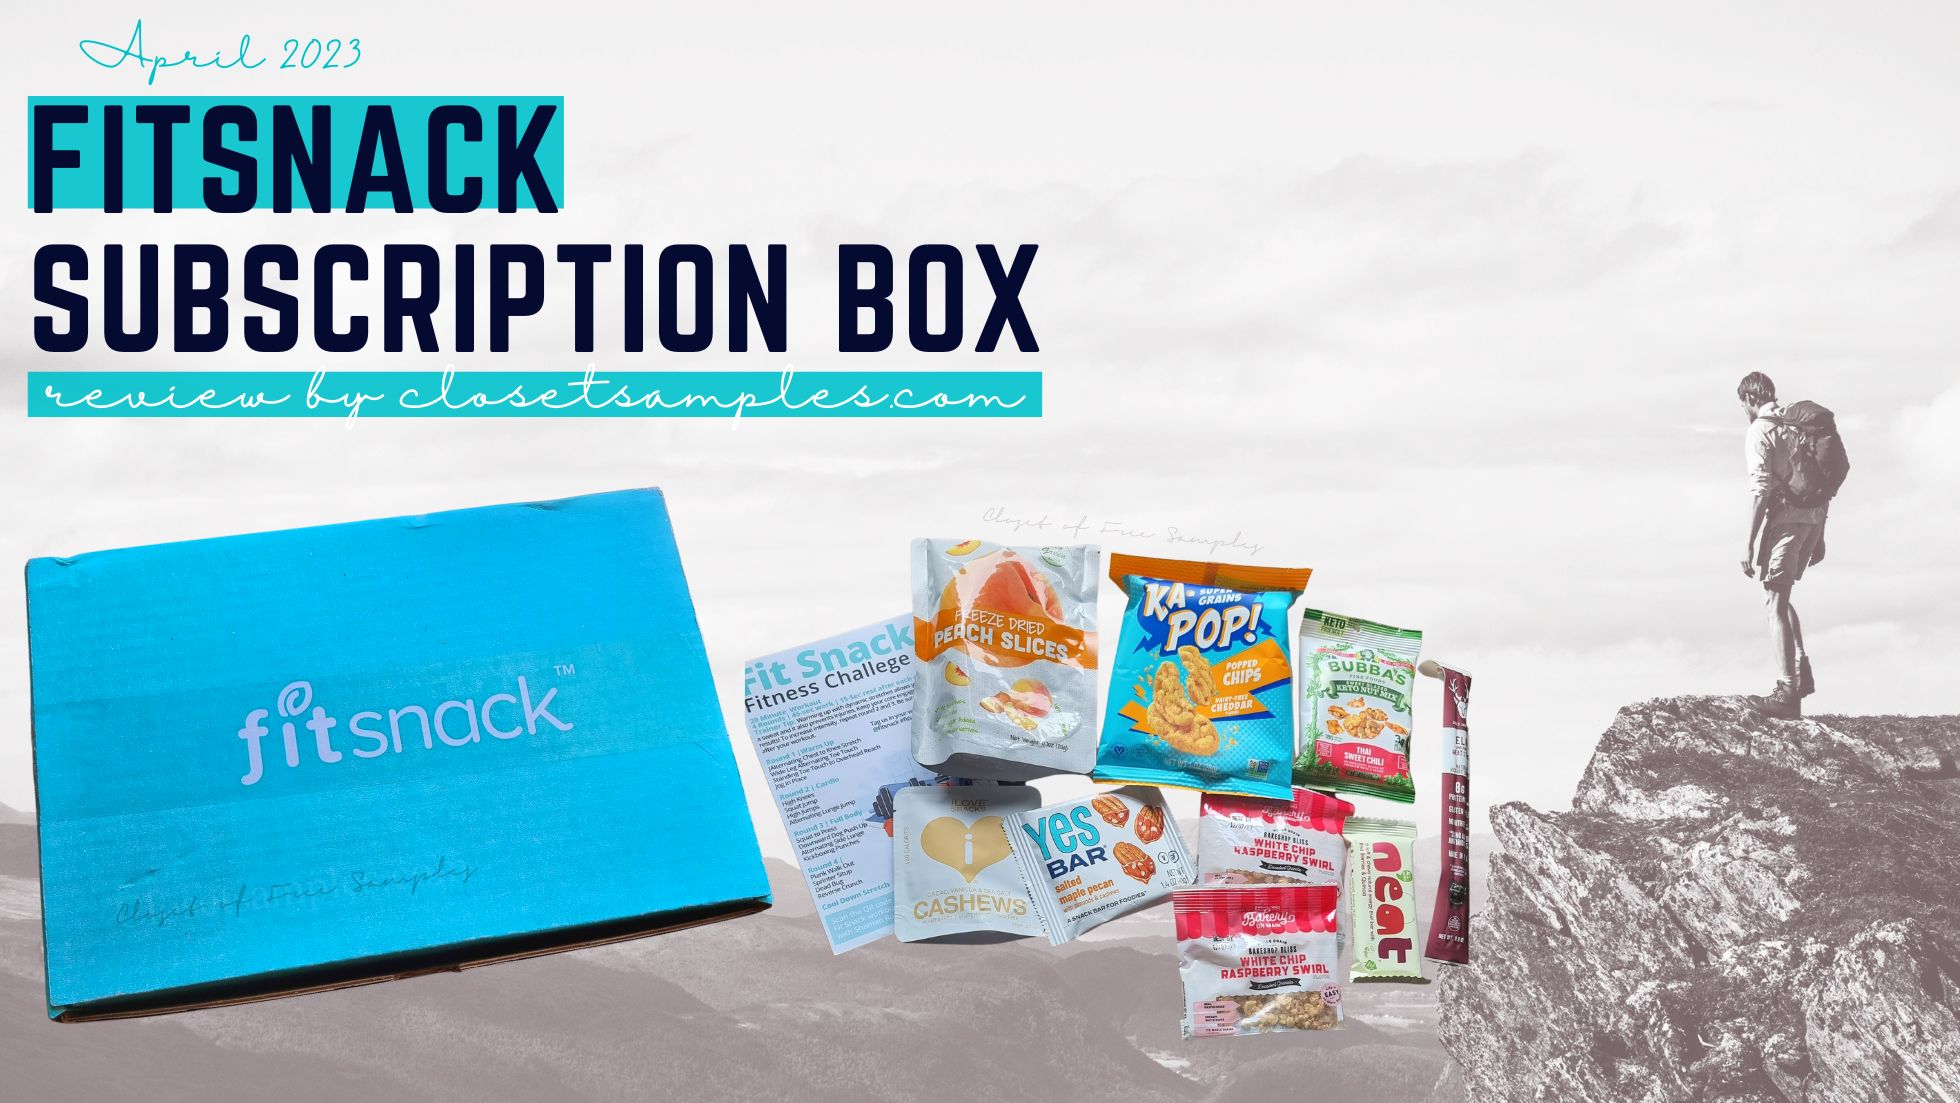 FitSnack Subscription Box Apri...